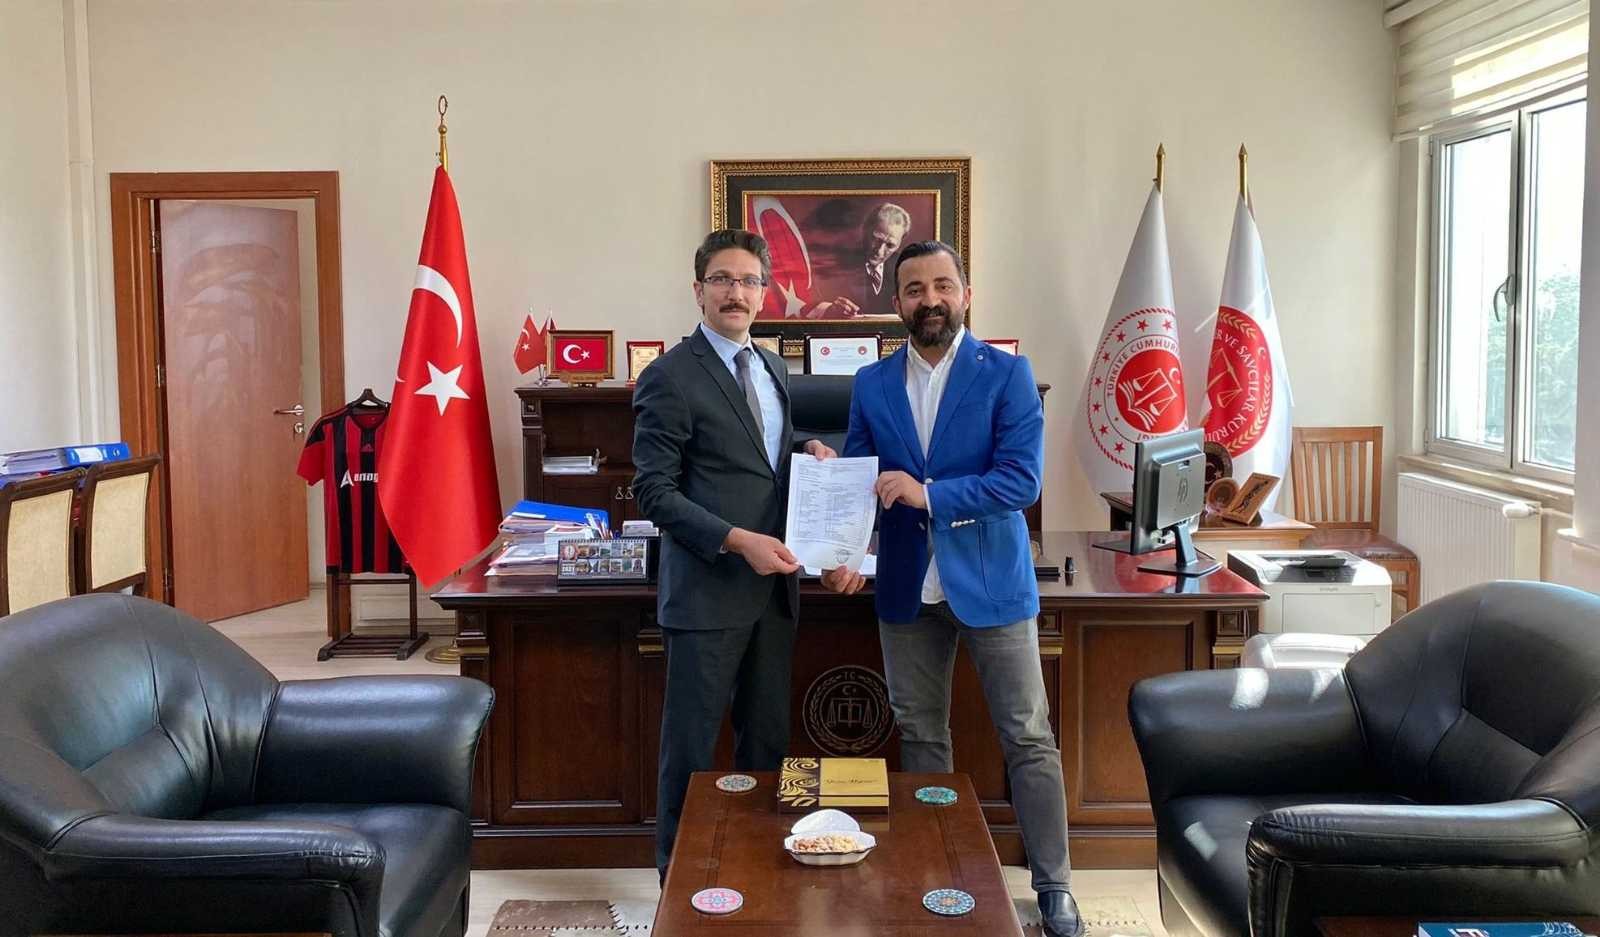 Erzincan Baro Başkanı Aktürk mazbatasını aldı #erzincan